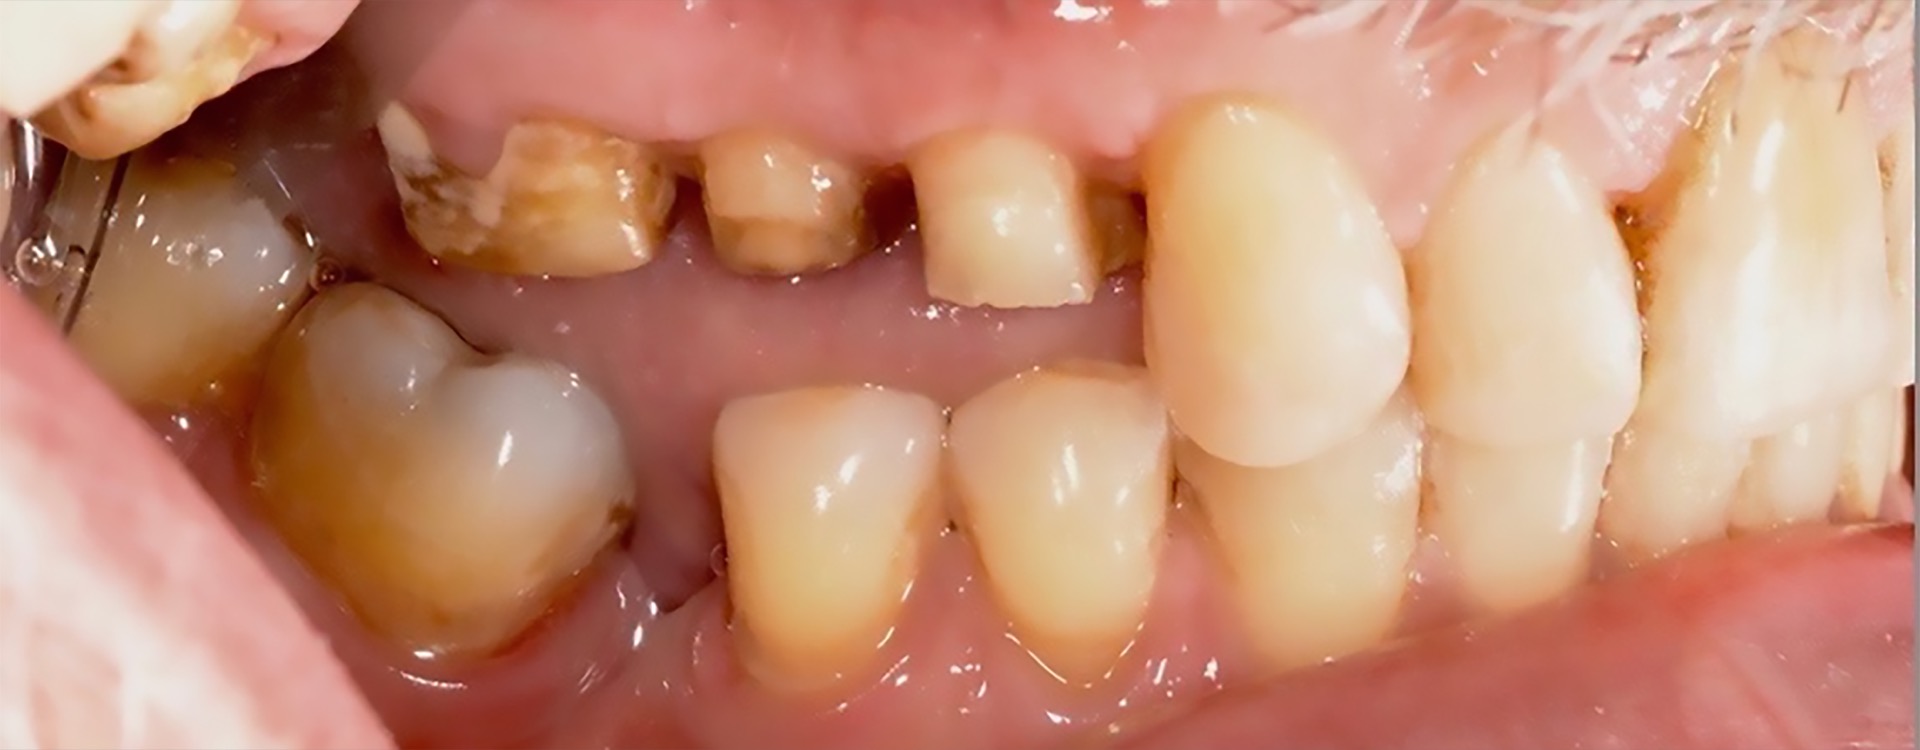 Τρεις μήνες μετά την χειρουργική αποκάλυψη των άνω δεξιά οπίσθιων δοντιών - Συγκριτικά με την προτέρα κατάσταση, τα δόντια τώρα έχουν επαρκές ύψος για να στηρίξουν τις αποκαταστάσεις.